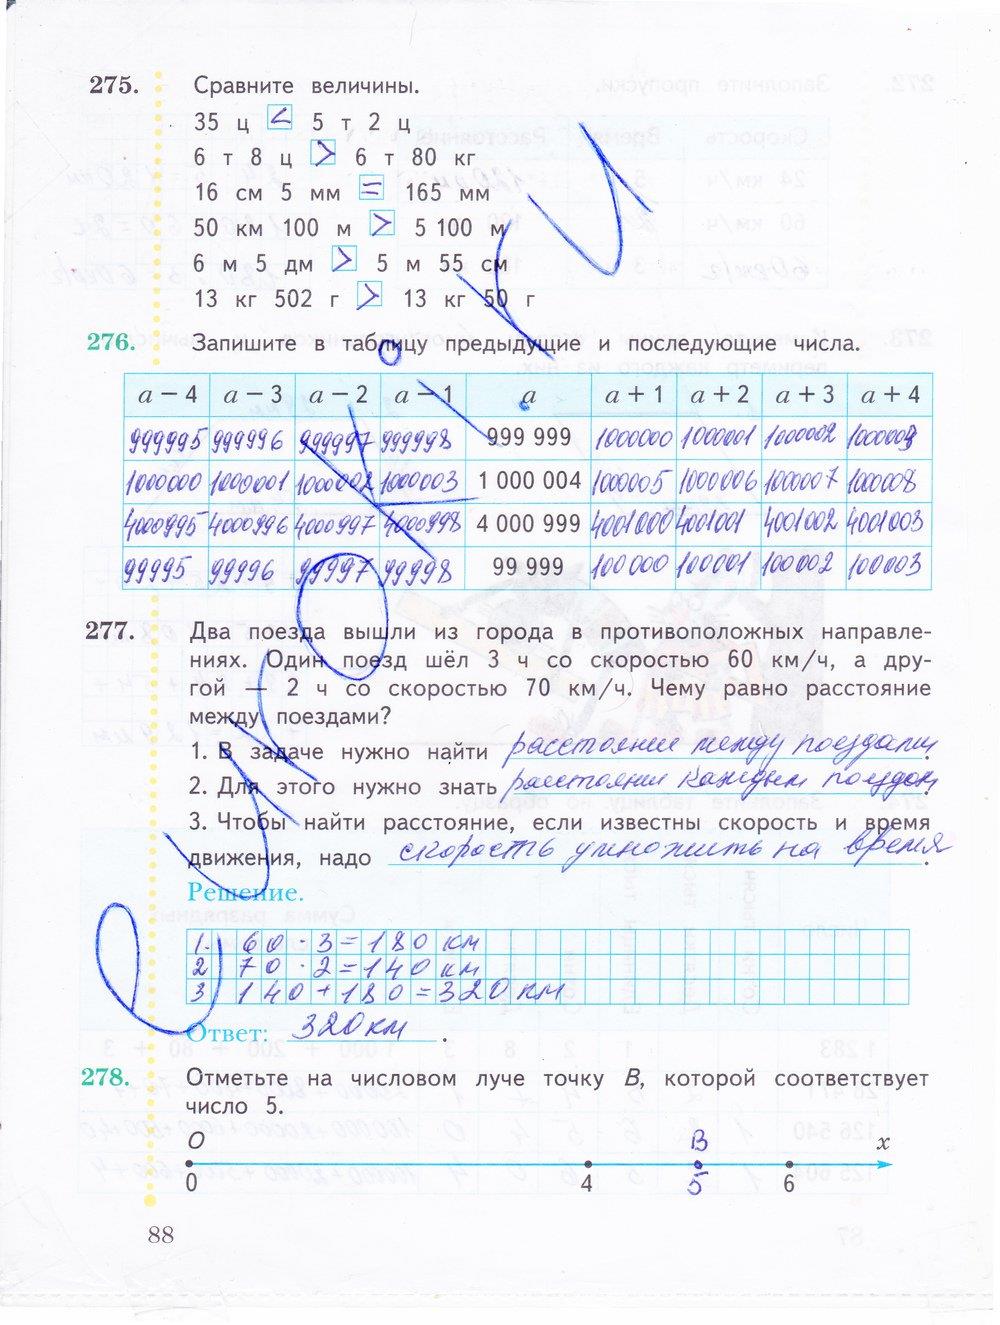 гдз 4 класс рабочая тетрадь часть 1 страница 88 математика Рудницкая, Юдачева